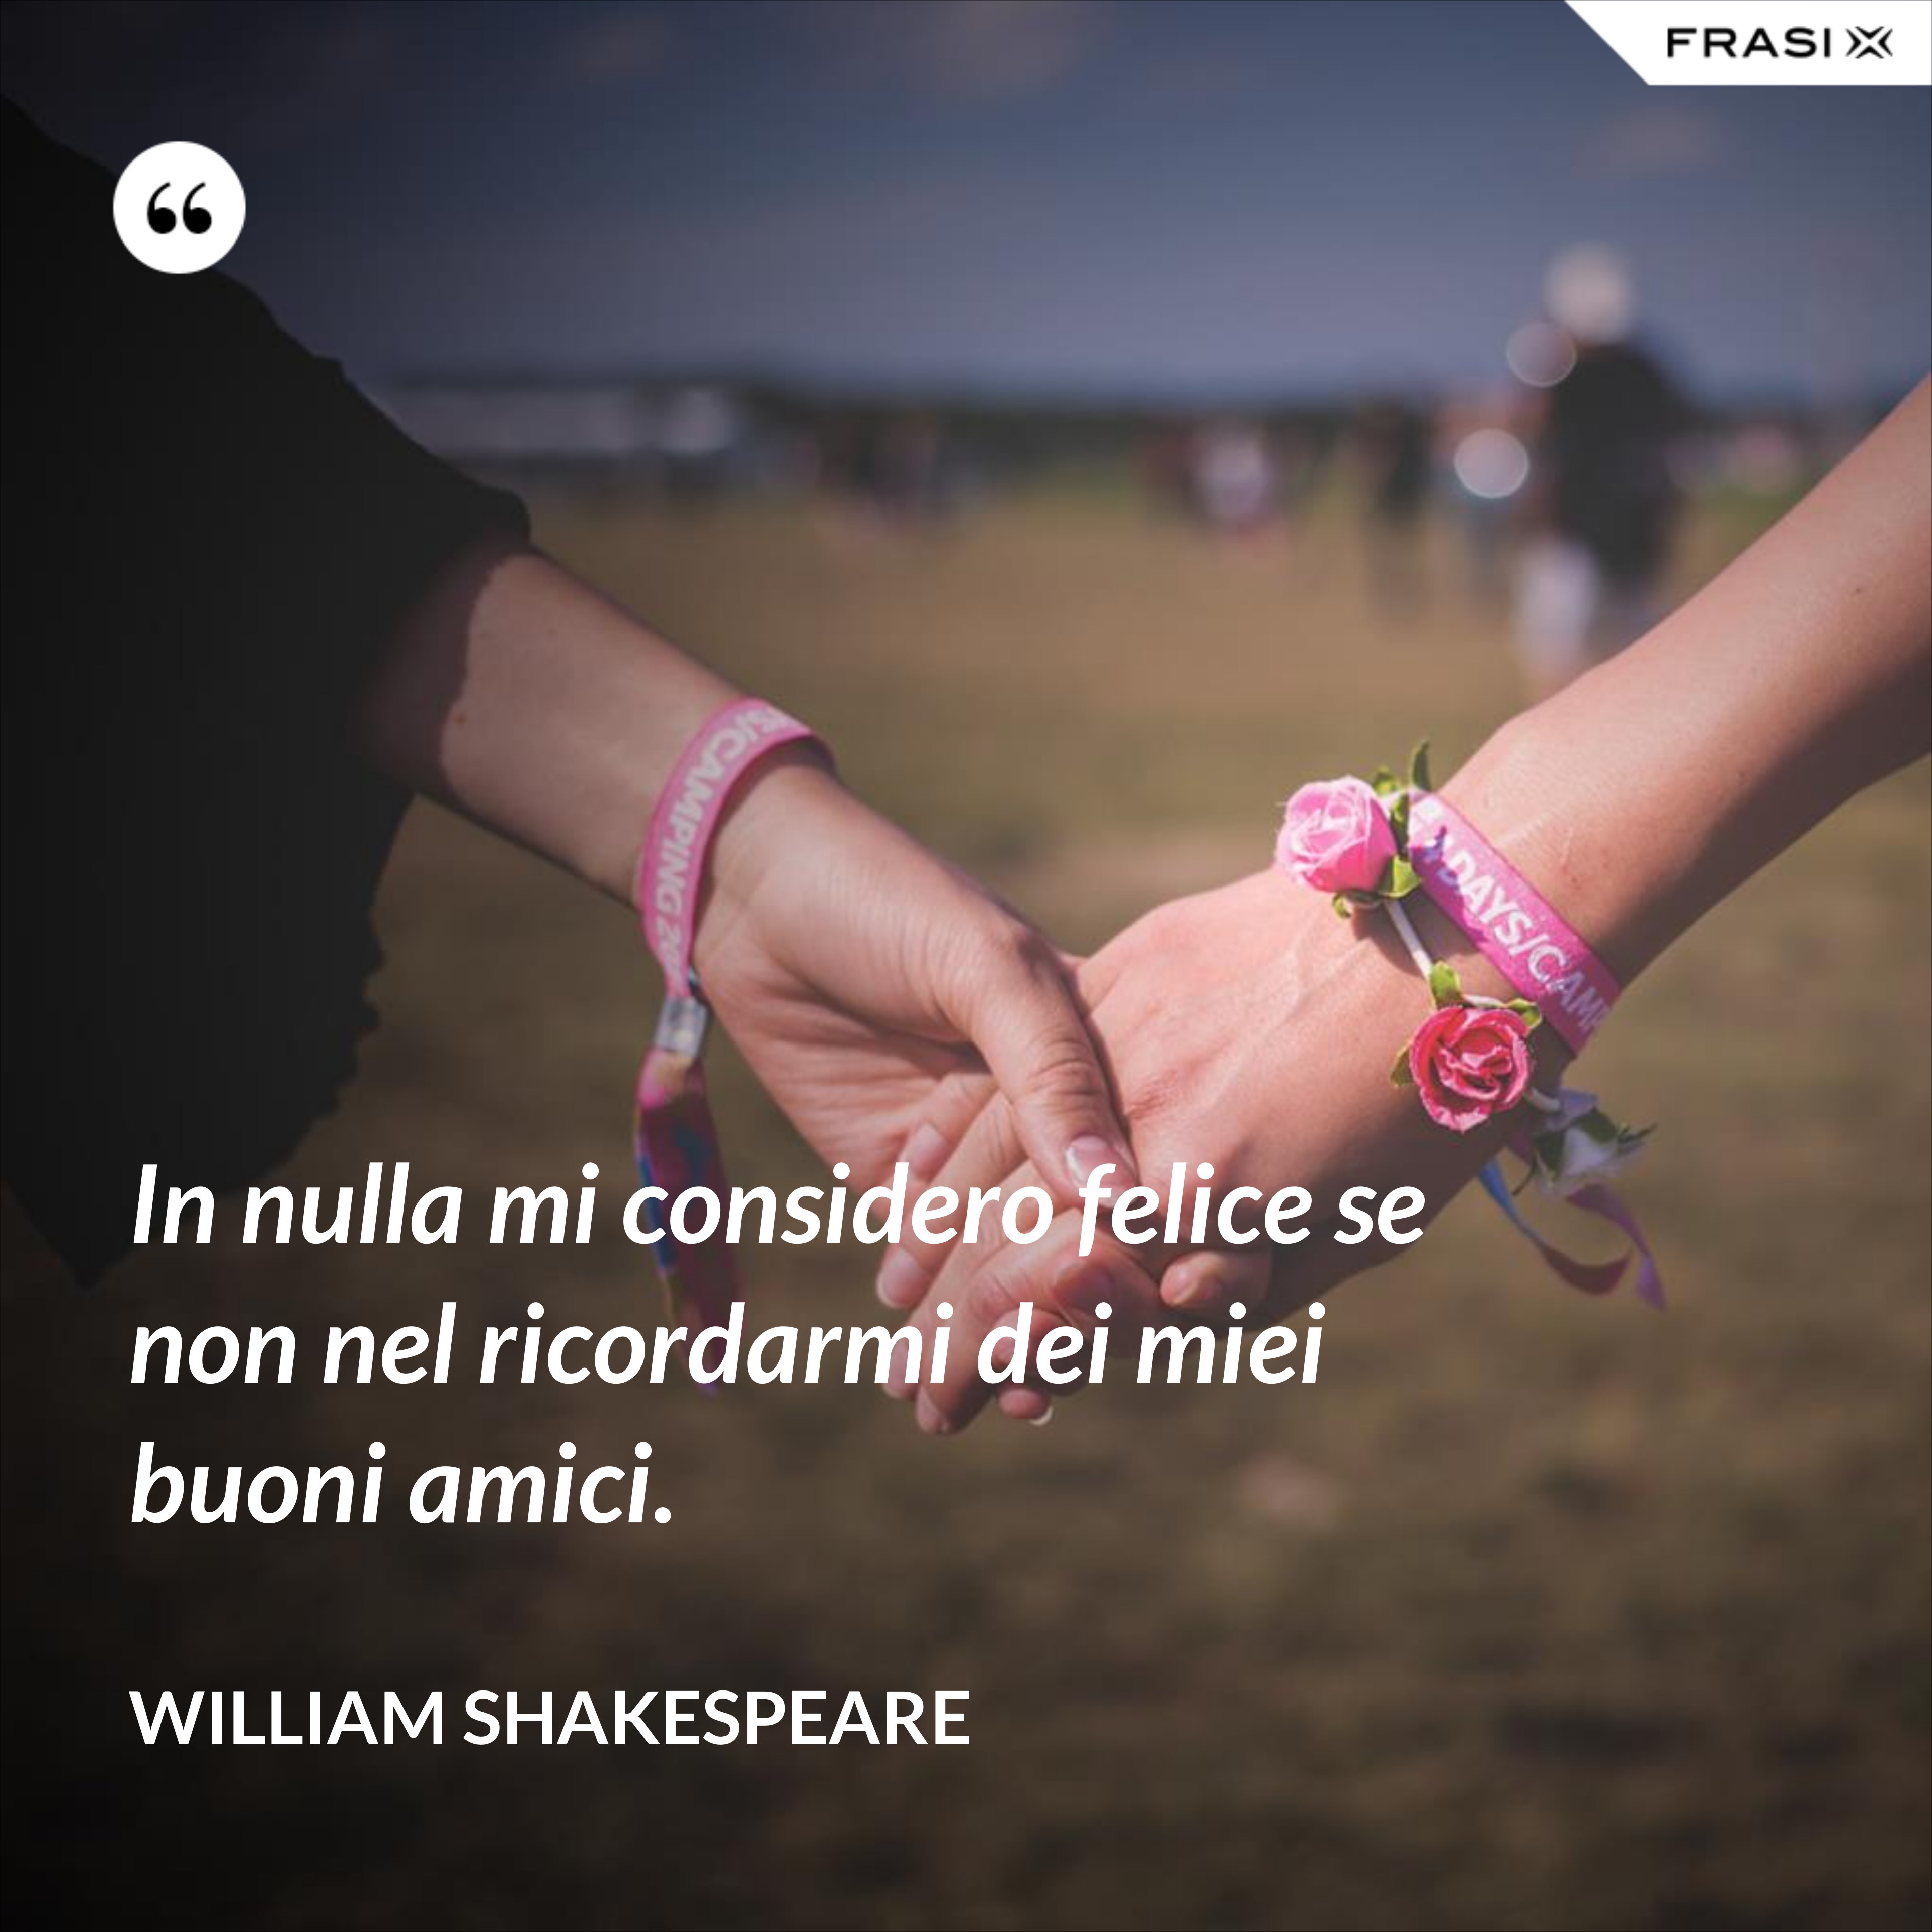 In nulla mi considero felice se non nel ricordarmi dei miei buoni amici. - William Shakespeare